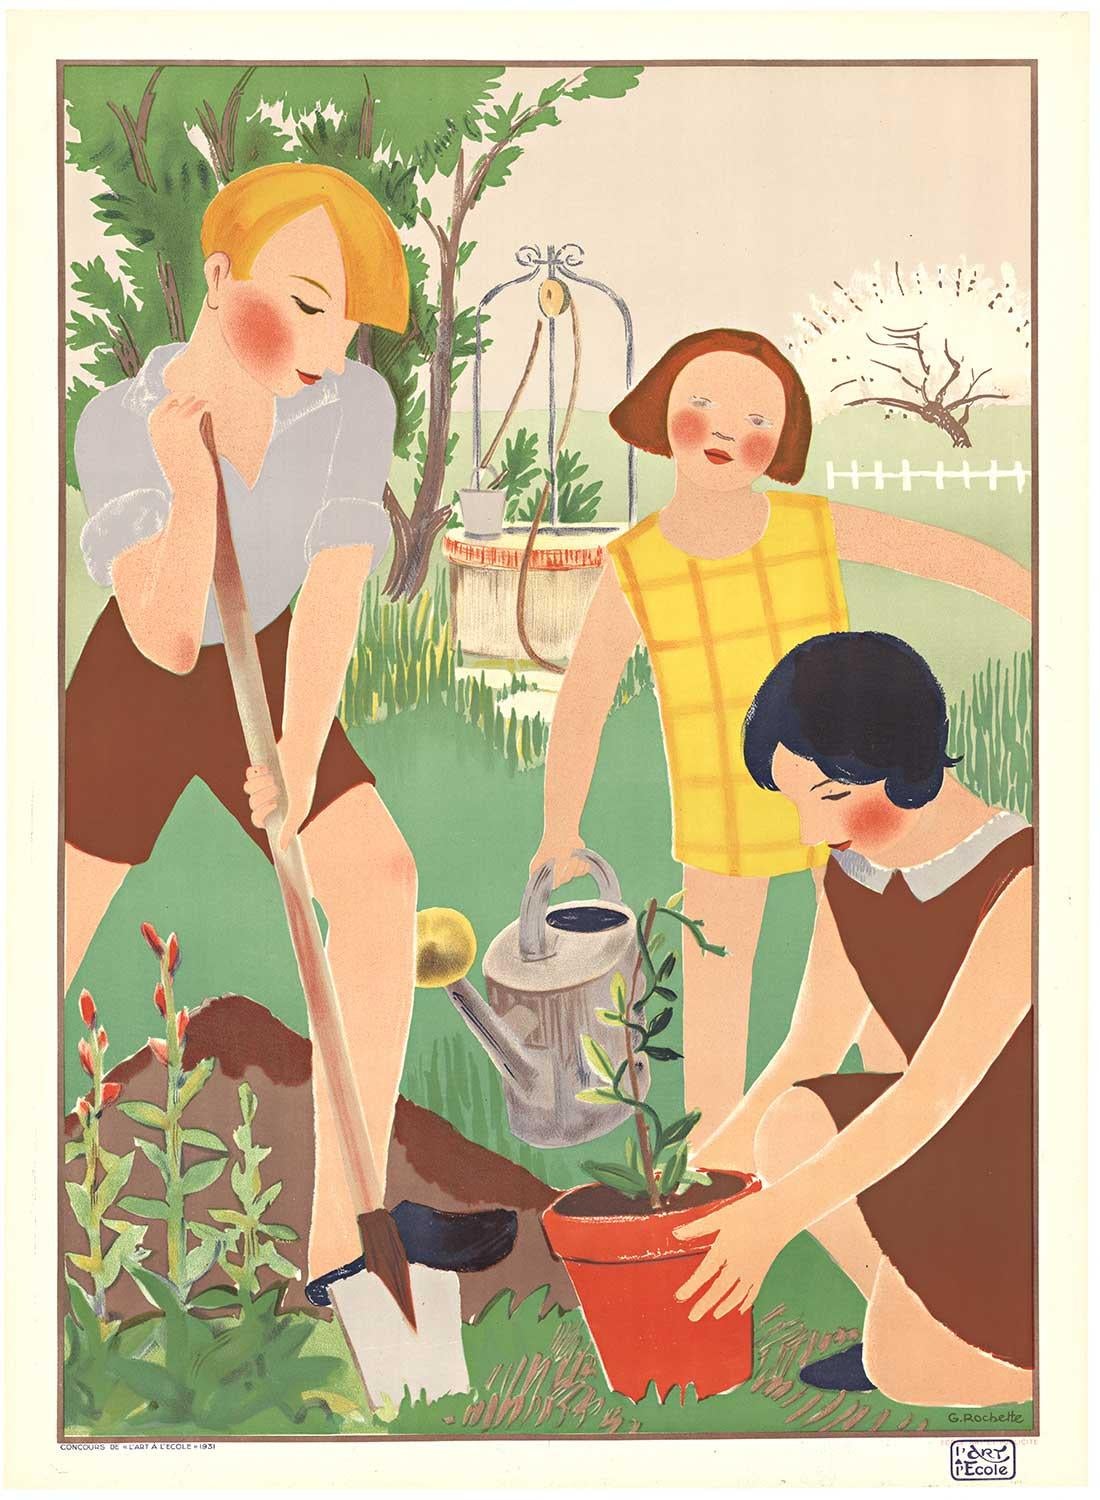 G. Rochette Landscape Print - Original Concours de L'Art a L'Ecole vintage French poster